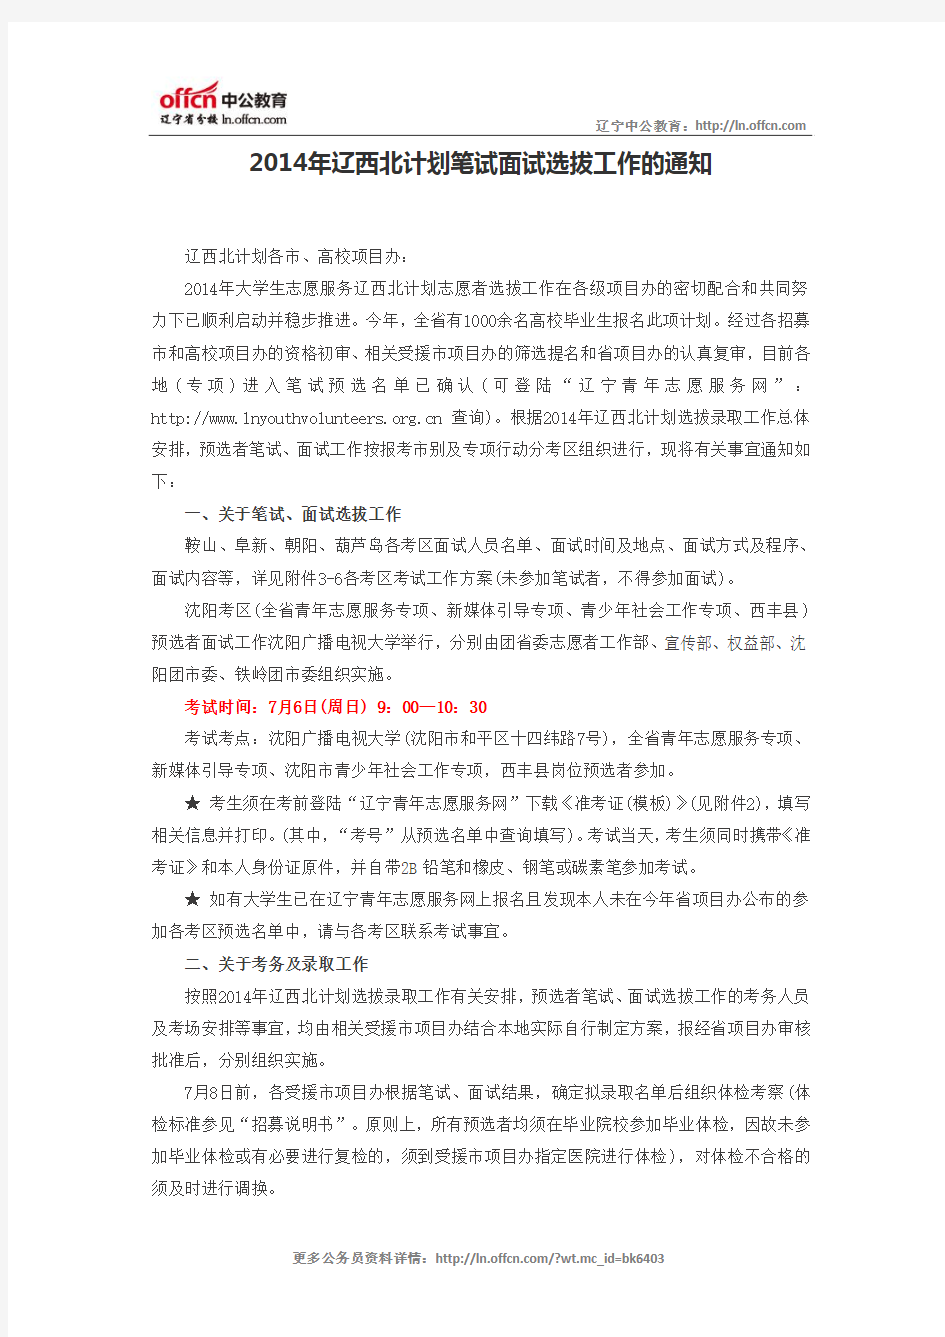 2014年辽西北计划笔试面试选拔工作的通知